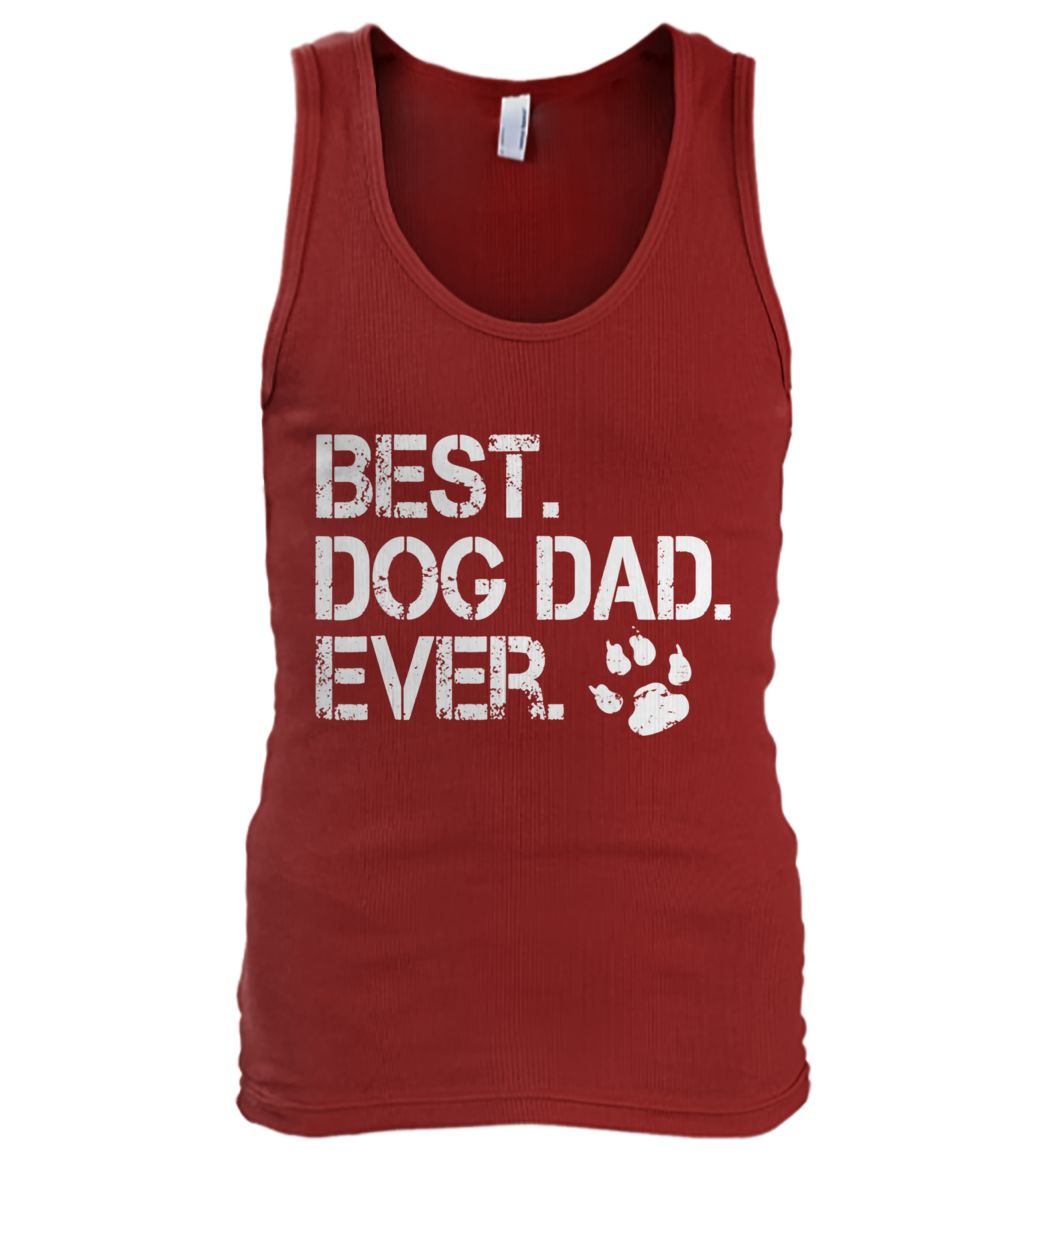 Best dog dad ever men's tank top